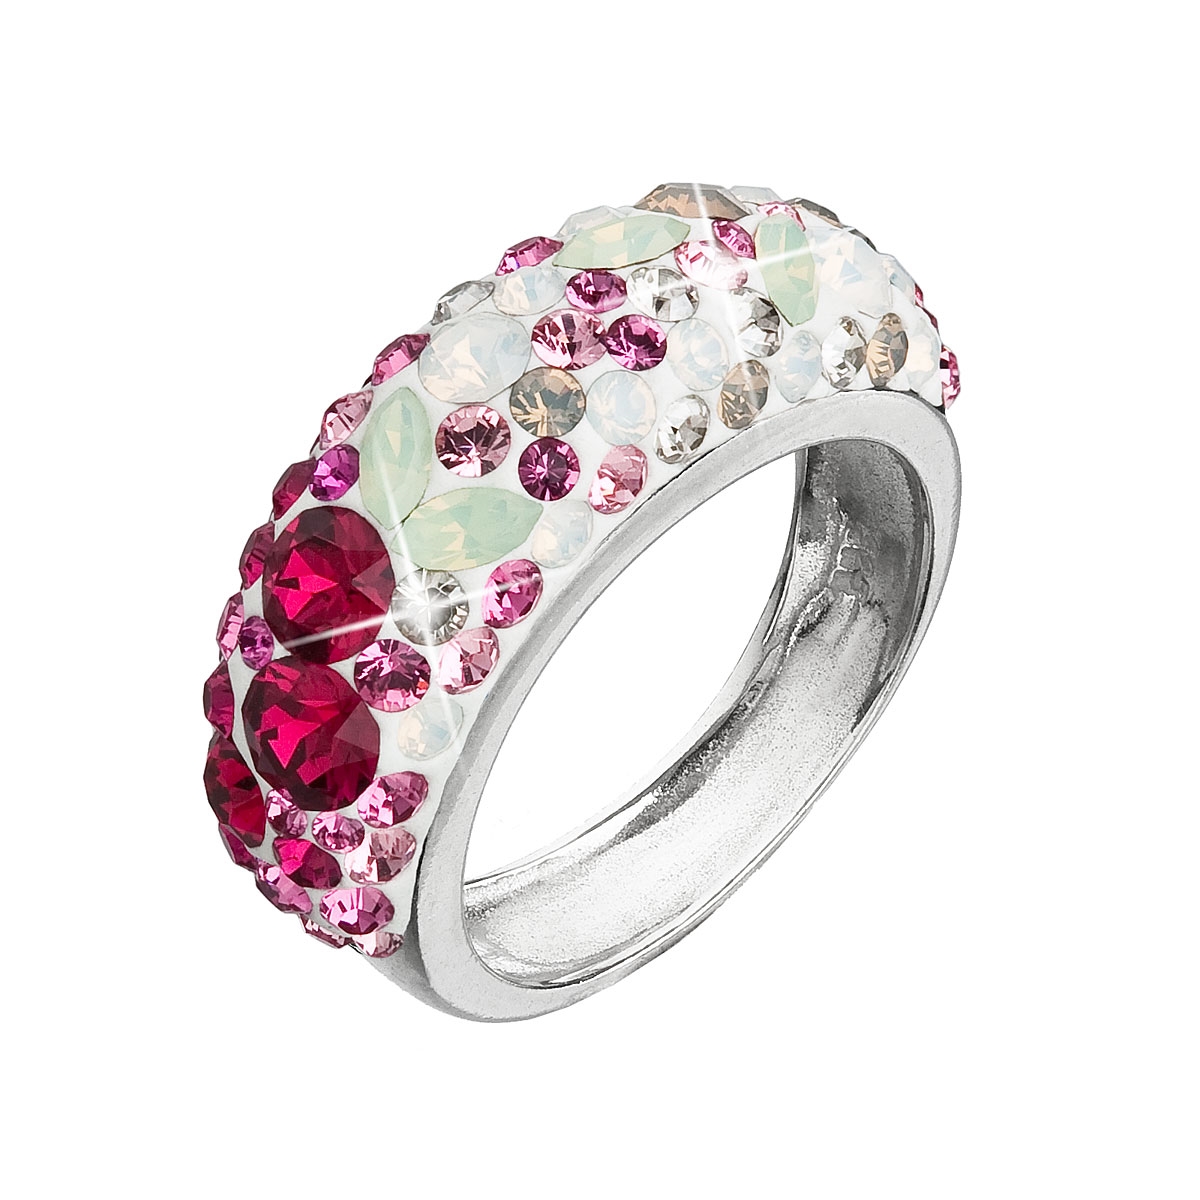 Strieborný prsteň s kryštálmi Crystals from Swarovski ®, Sweet Love